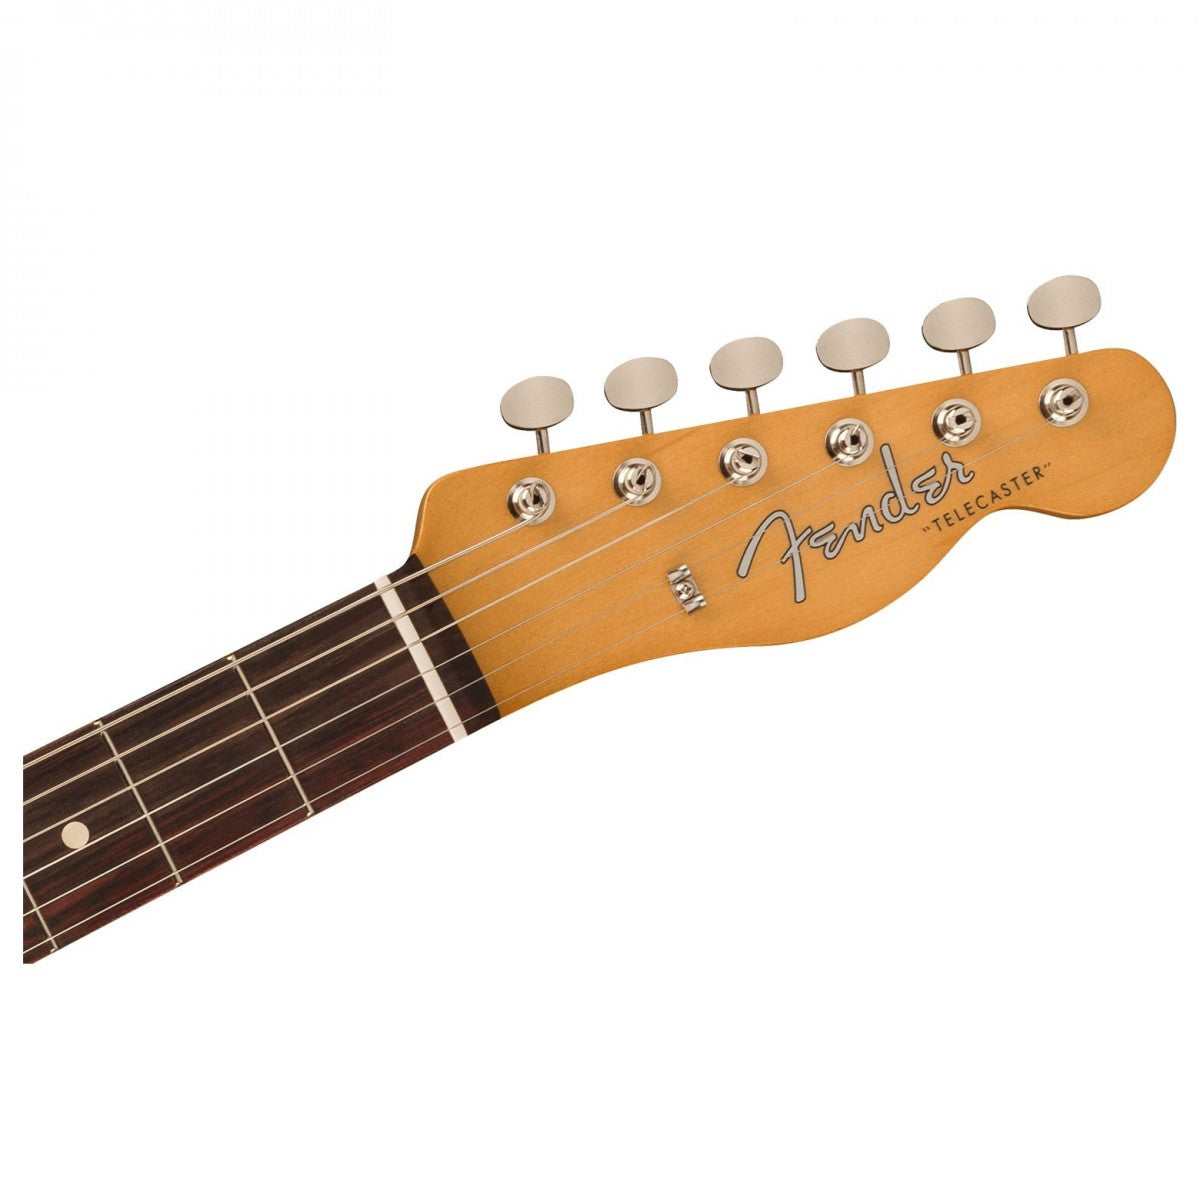 Fender Vintera II '60s Telecaster - Rosewood Fingerboard - Fiesta Red